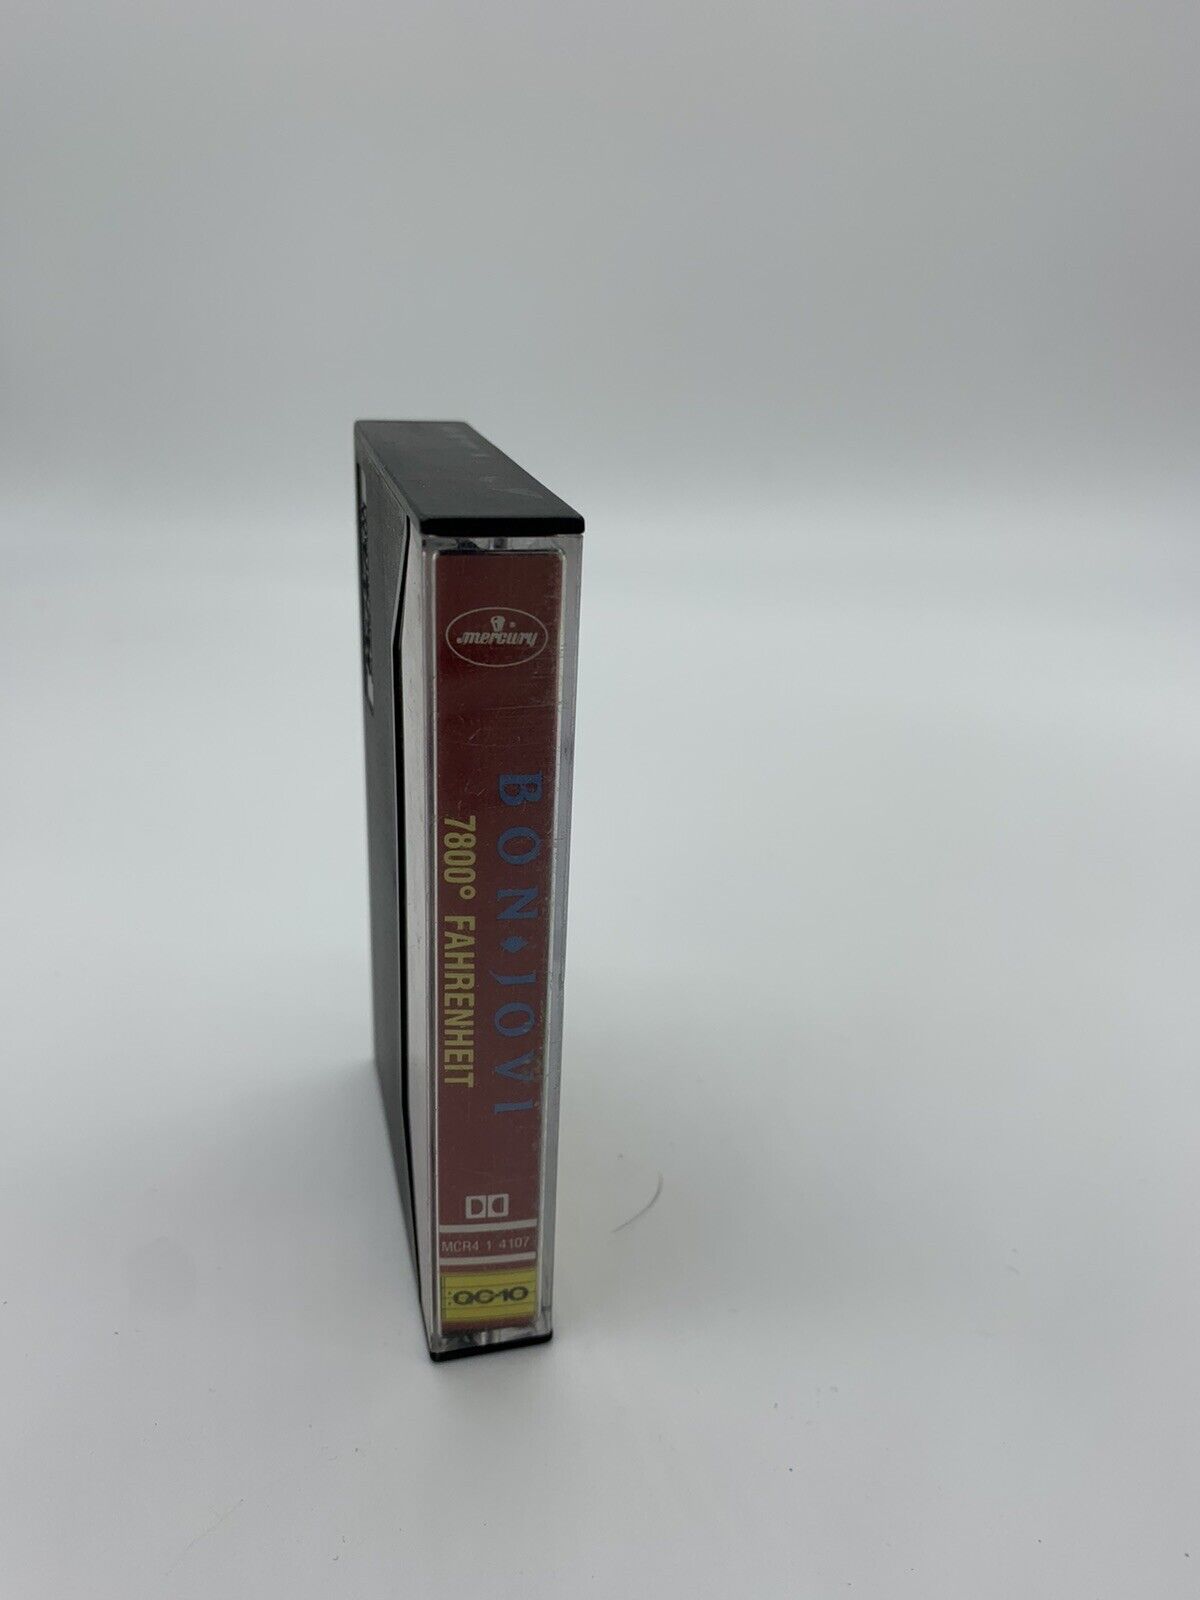 7800° Fahrenheit by Bon Jovi (Cassette)